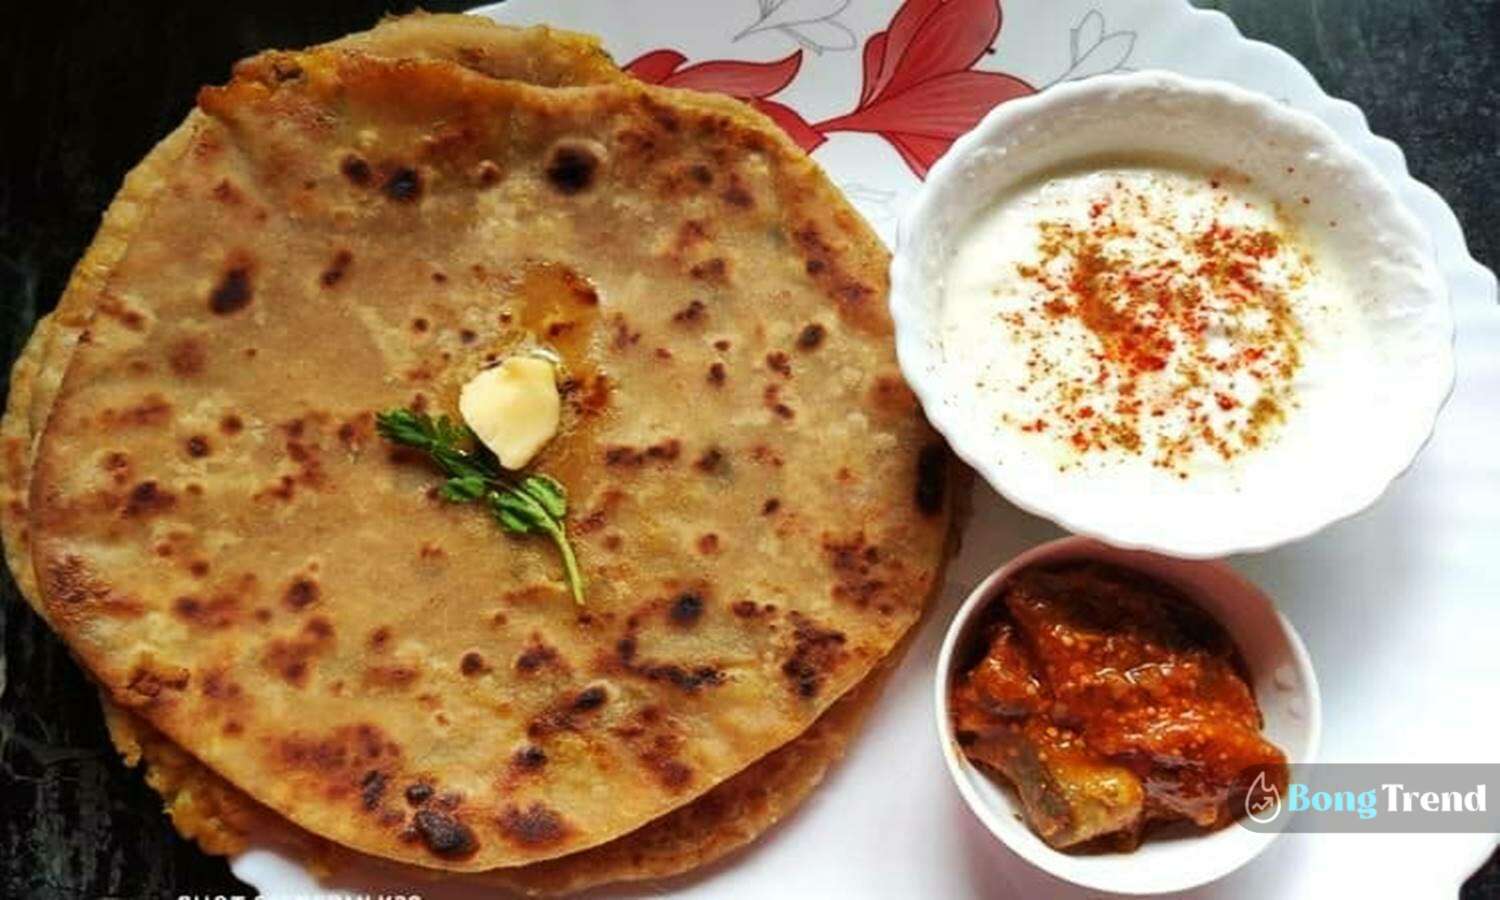 আলুর পরোটা,জলখাবার,ব্রেকফাস্ট,ব্রেকফাস্টের রেসিপি,জলখাবারের রেসিপি,aloo ki paratha,aloo paratha,Bengali recipe,breakfast recipe